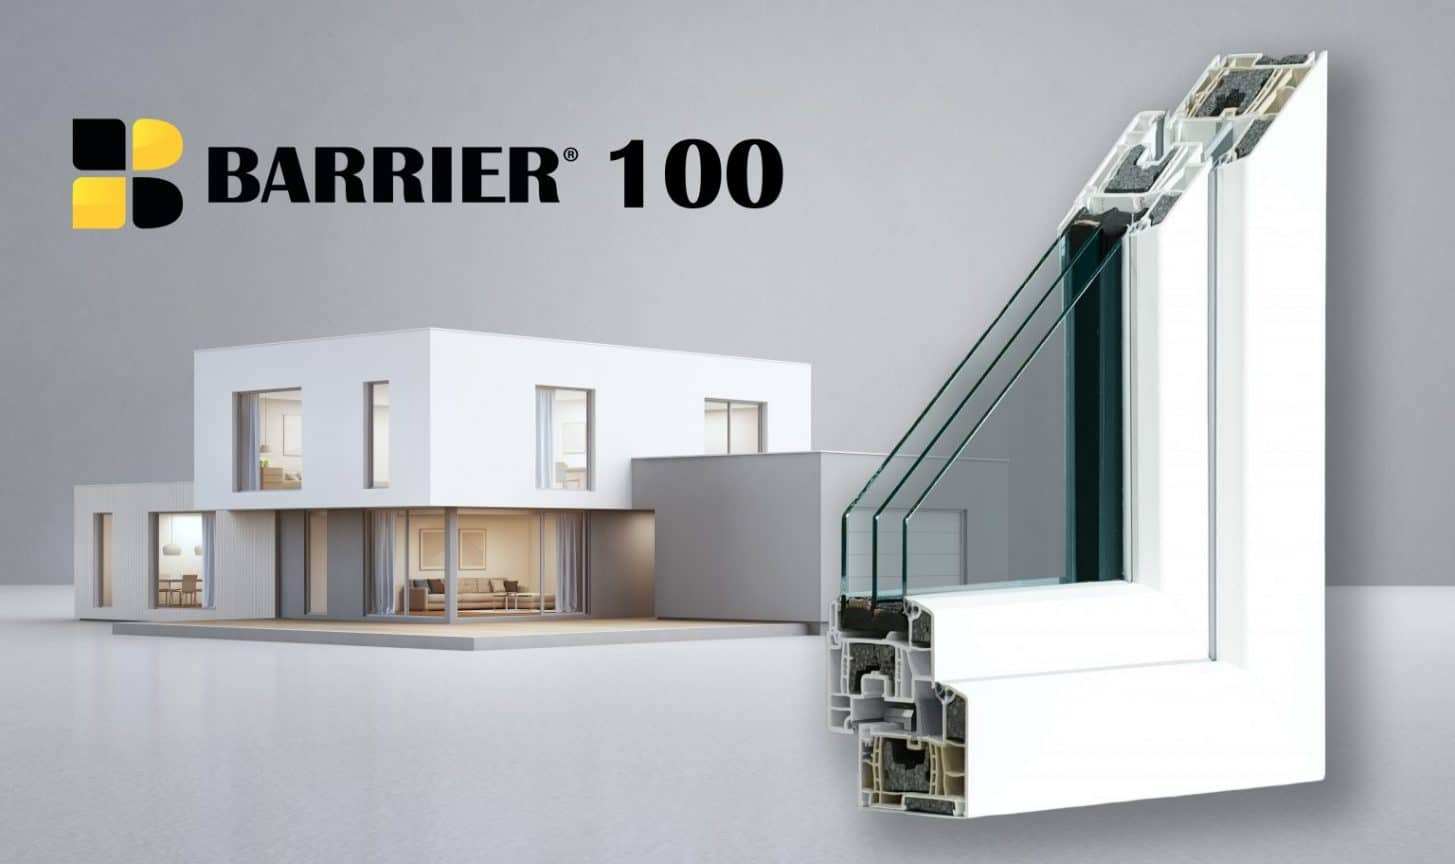 Barrier 100